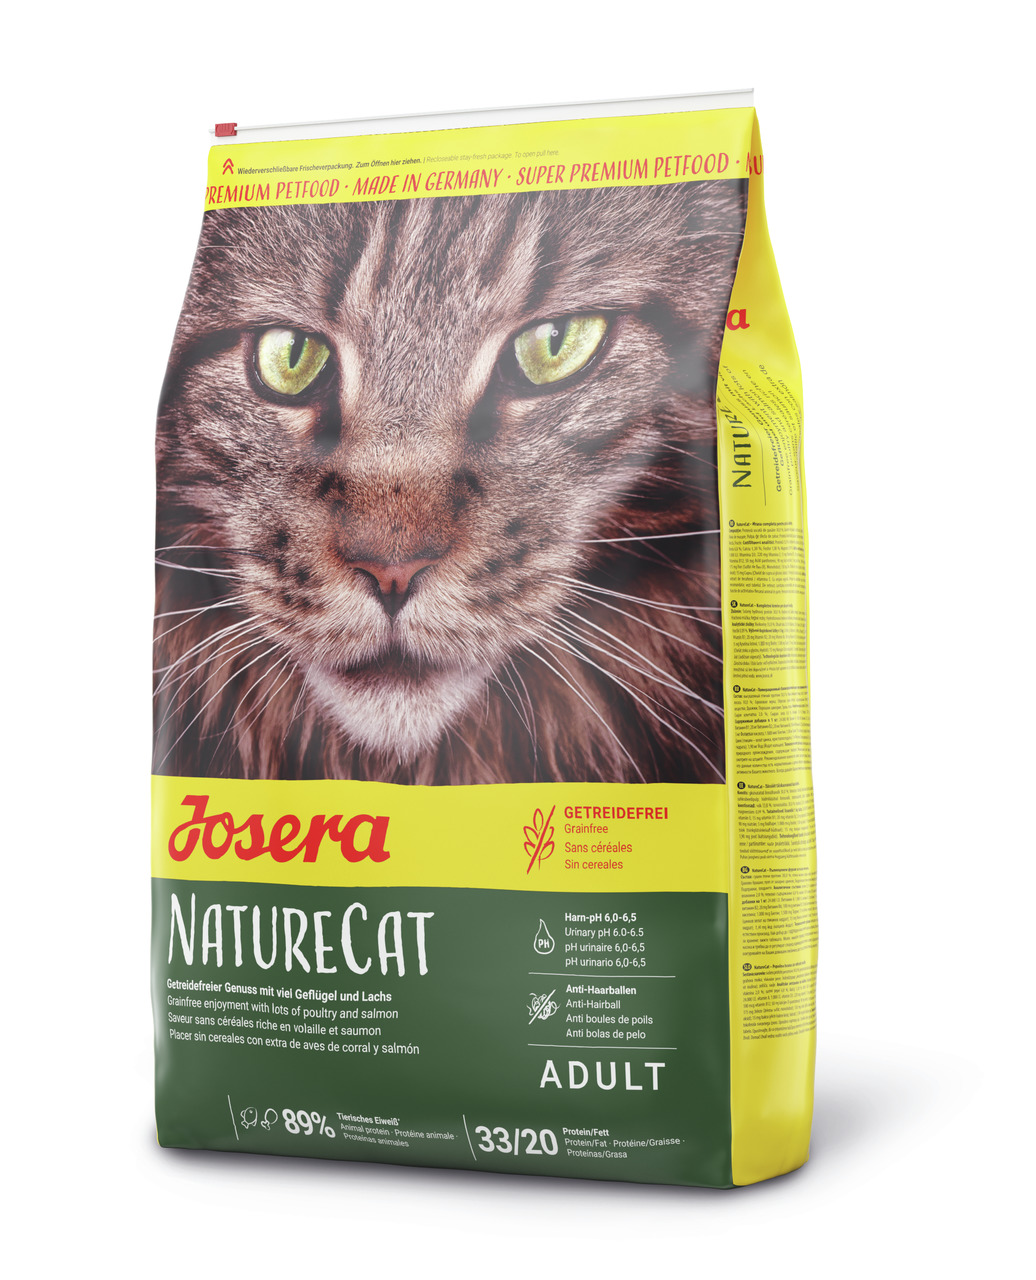 Josera NatureCat Katzen Trockenfutter 10 kg